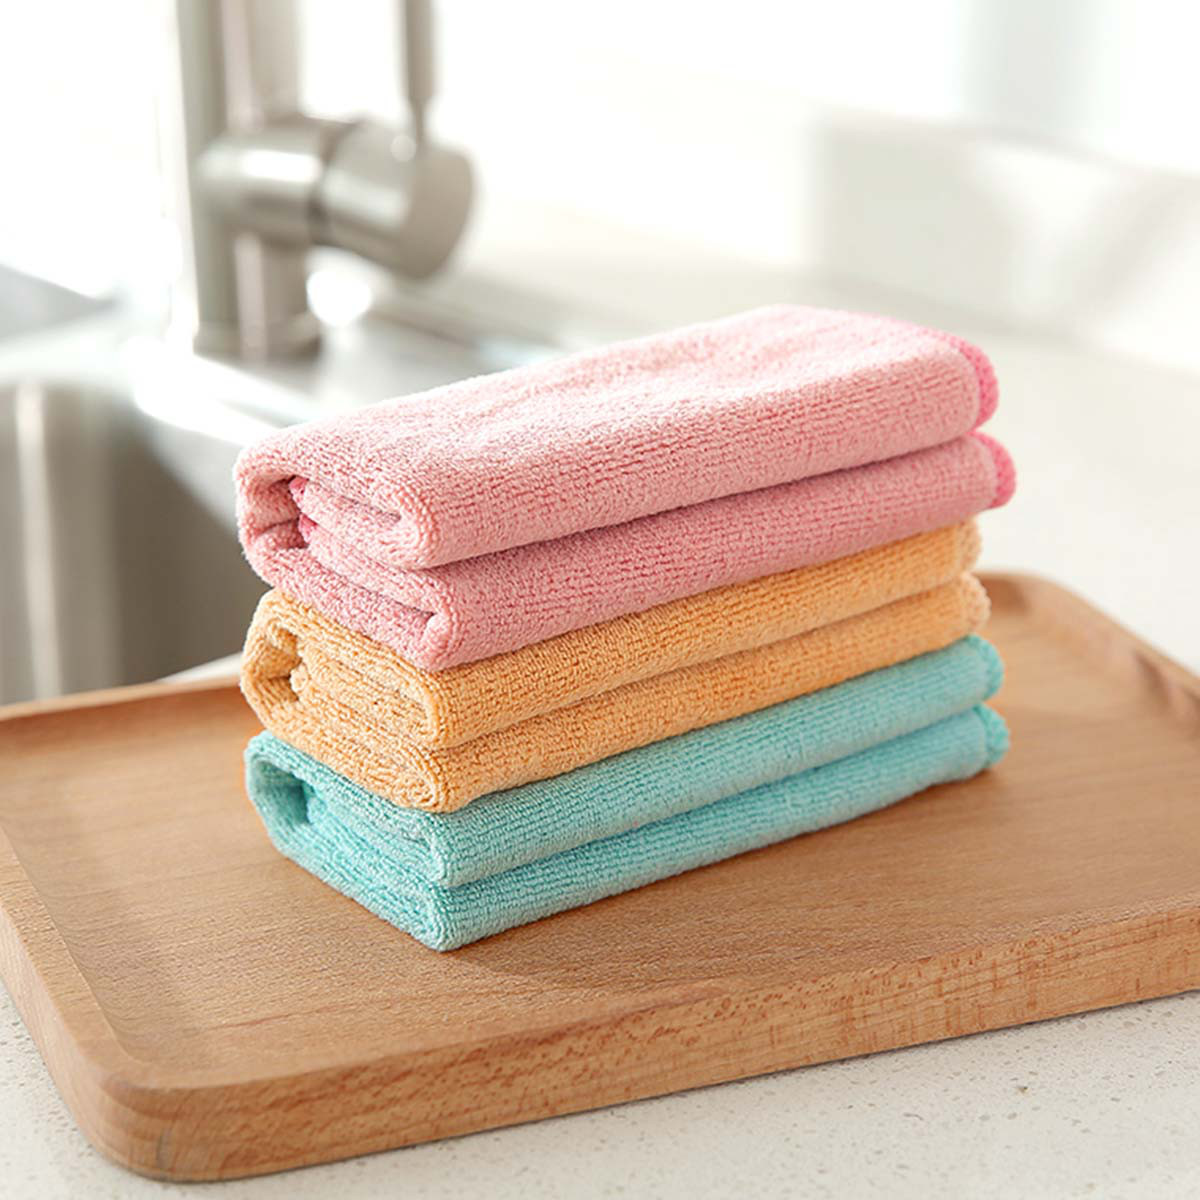 潮湿的毛巾和抹布最容易让细菌滋生。-图摘自网络-